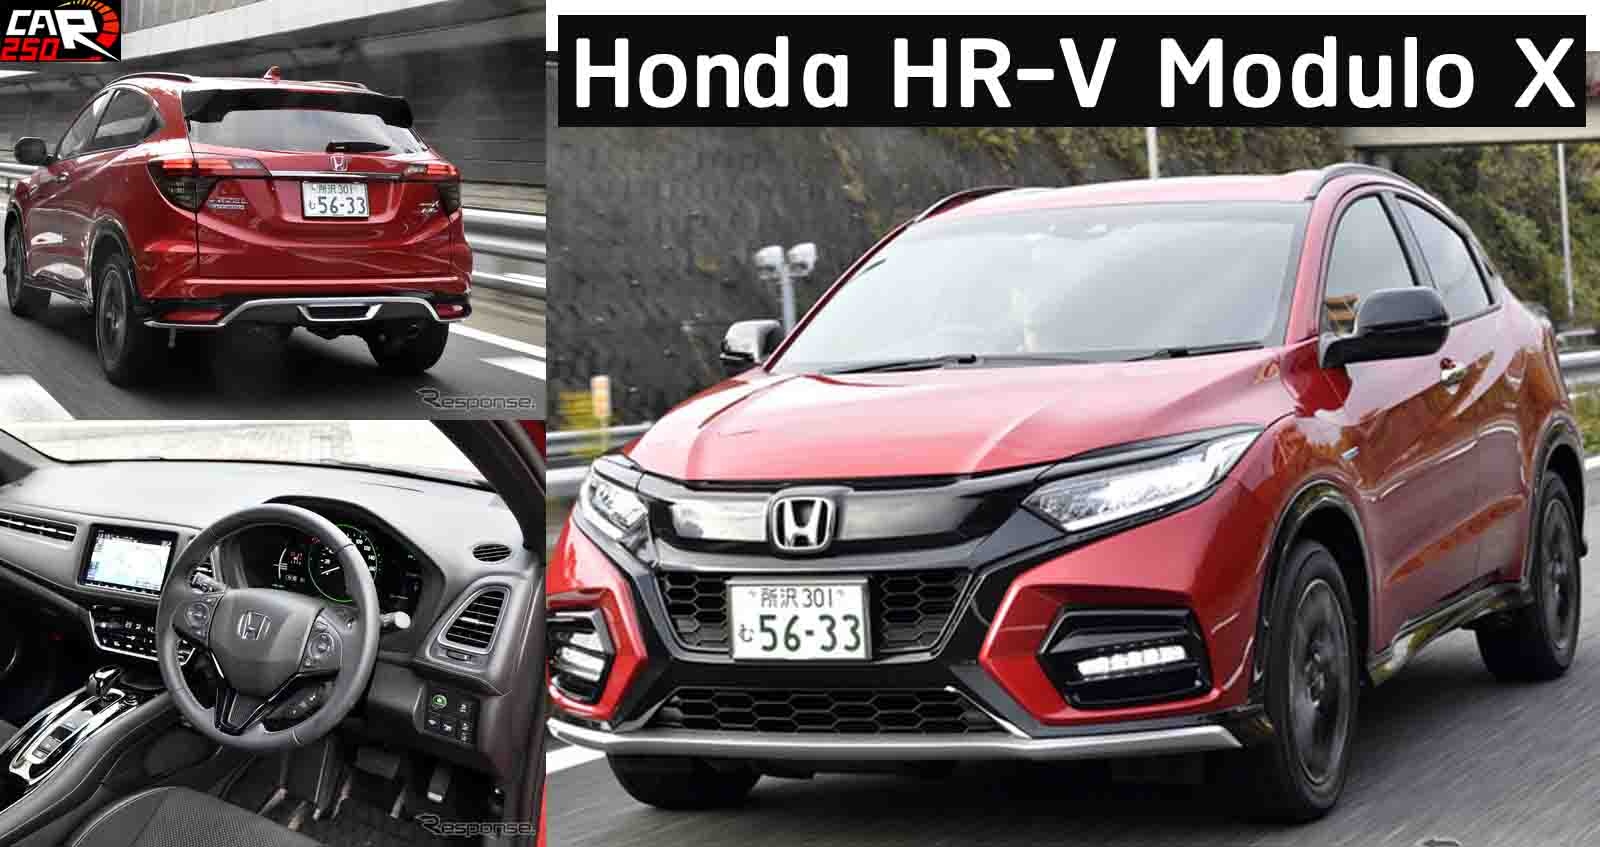 ภาพคันจริง Honda HR-V Modulo X + Honda SENSING +  1.5 VTEC Turbo และ HYBRID  ในญี่ปุ่น